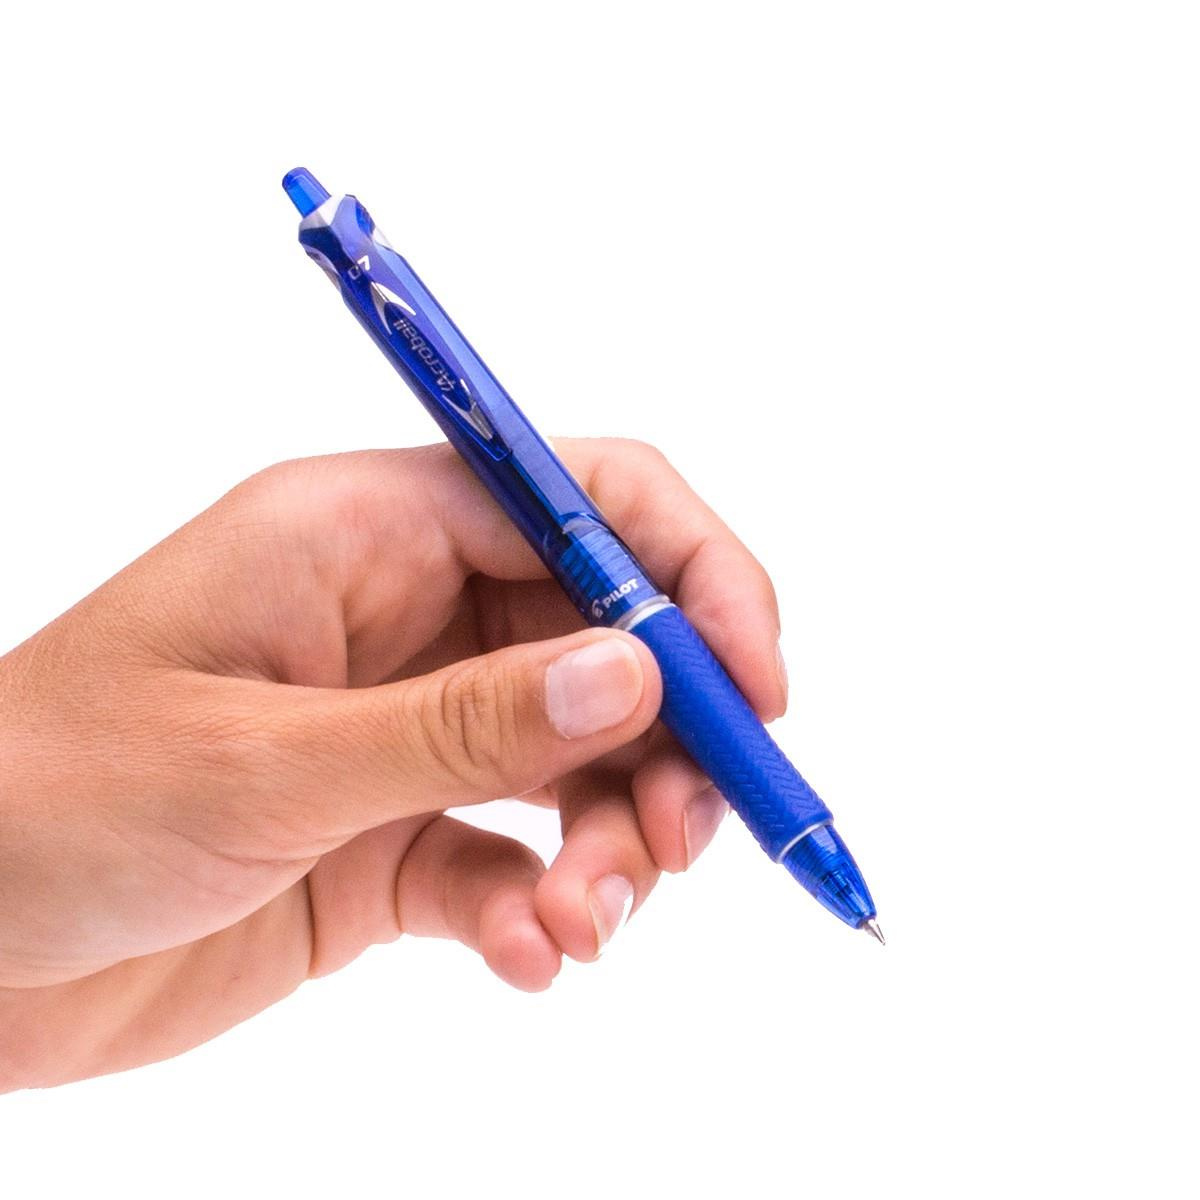 Długopis automatyczny Pilot Acroball niebieski